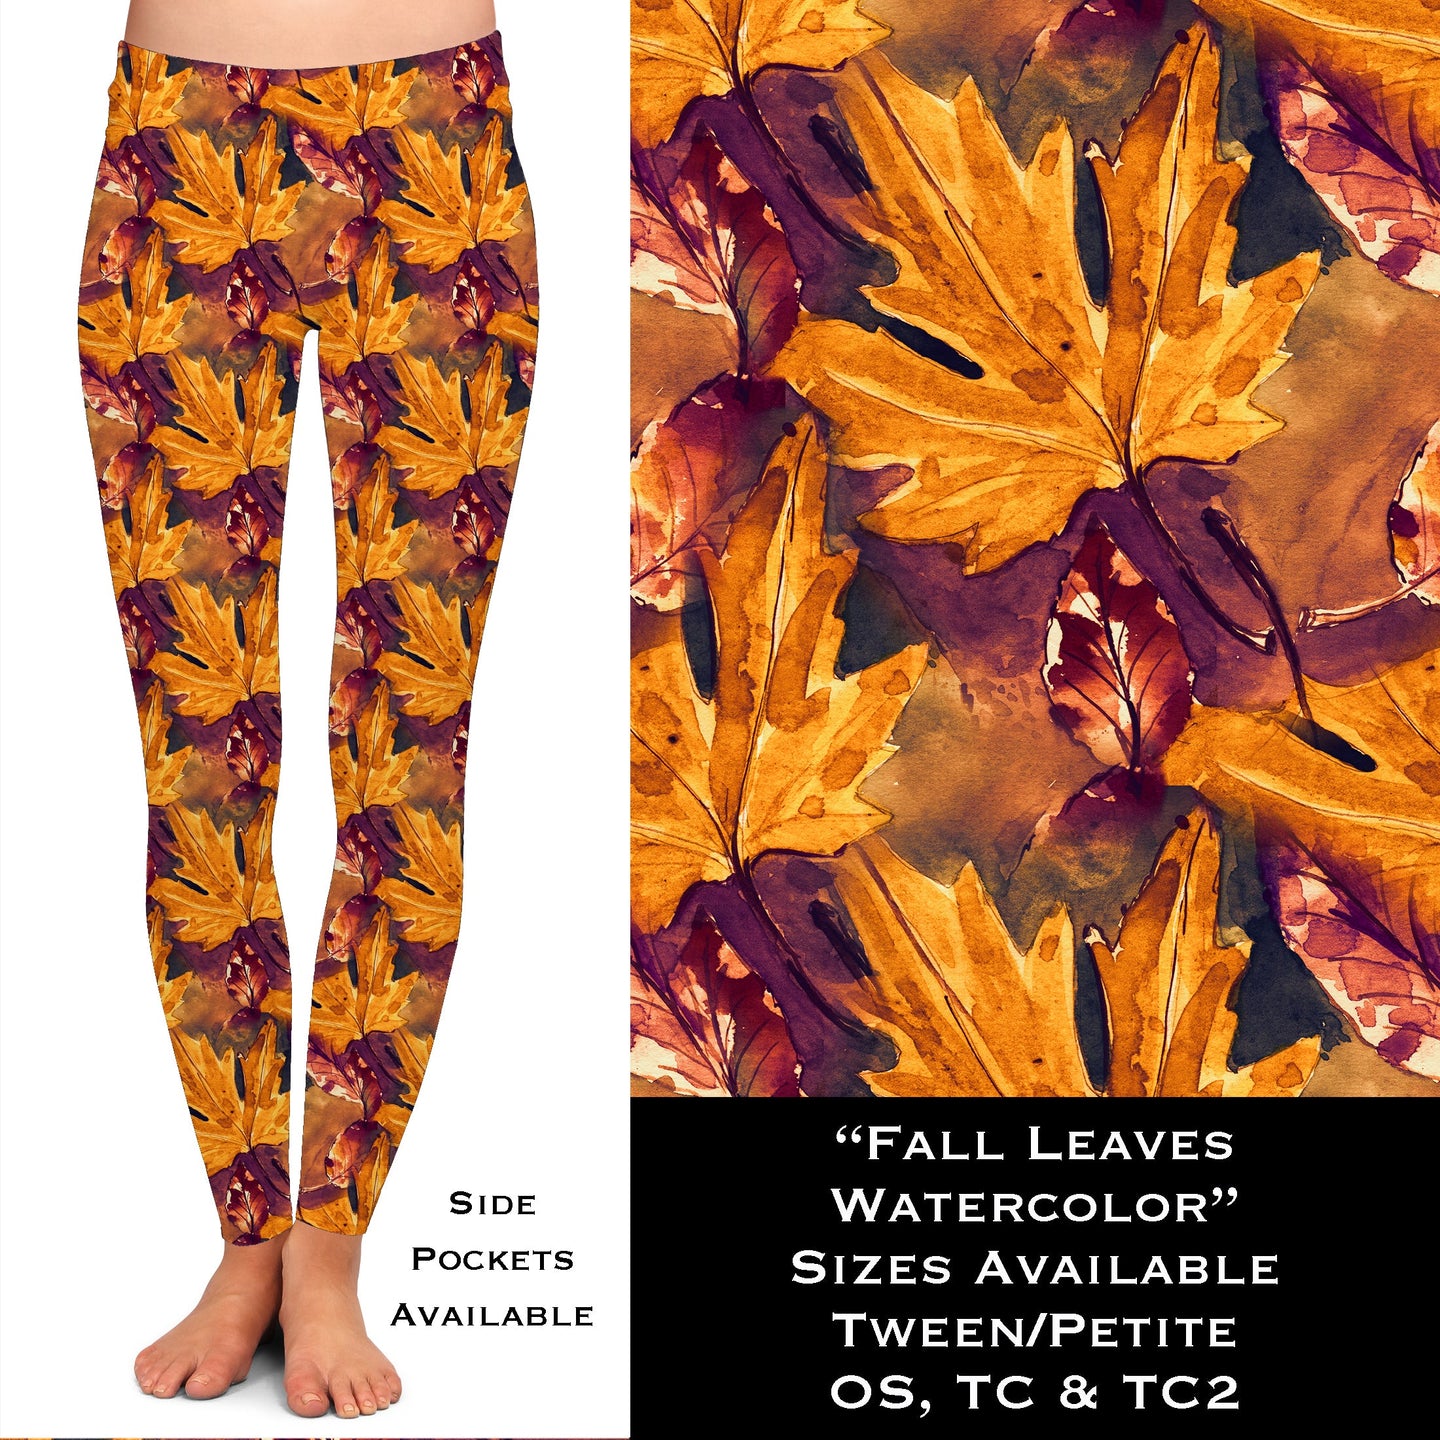 Fall Leaves Watercolor Full Leggings